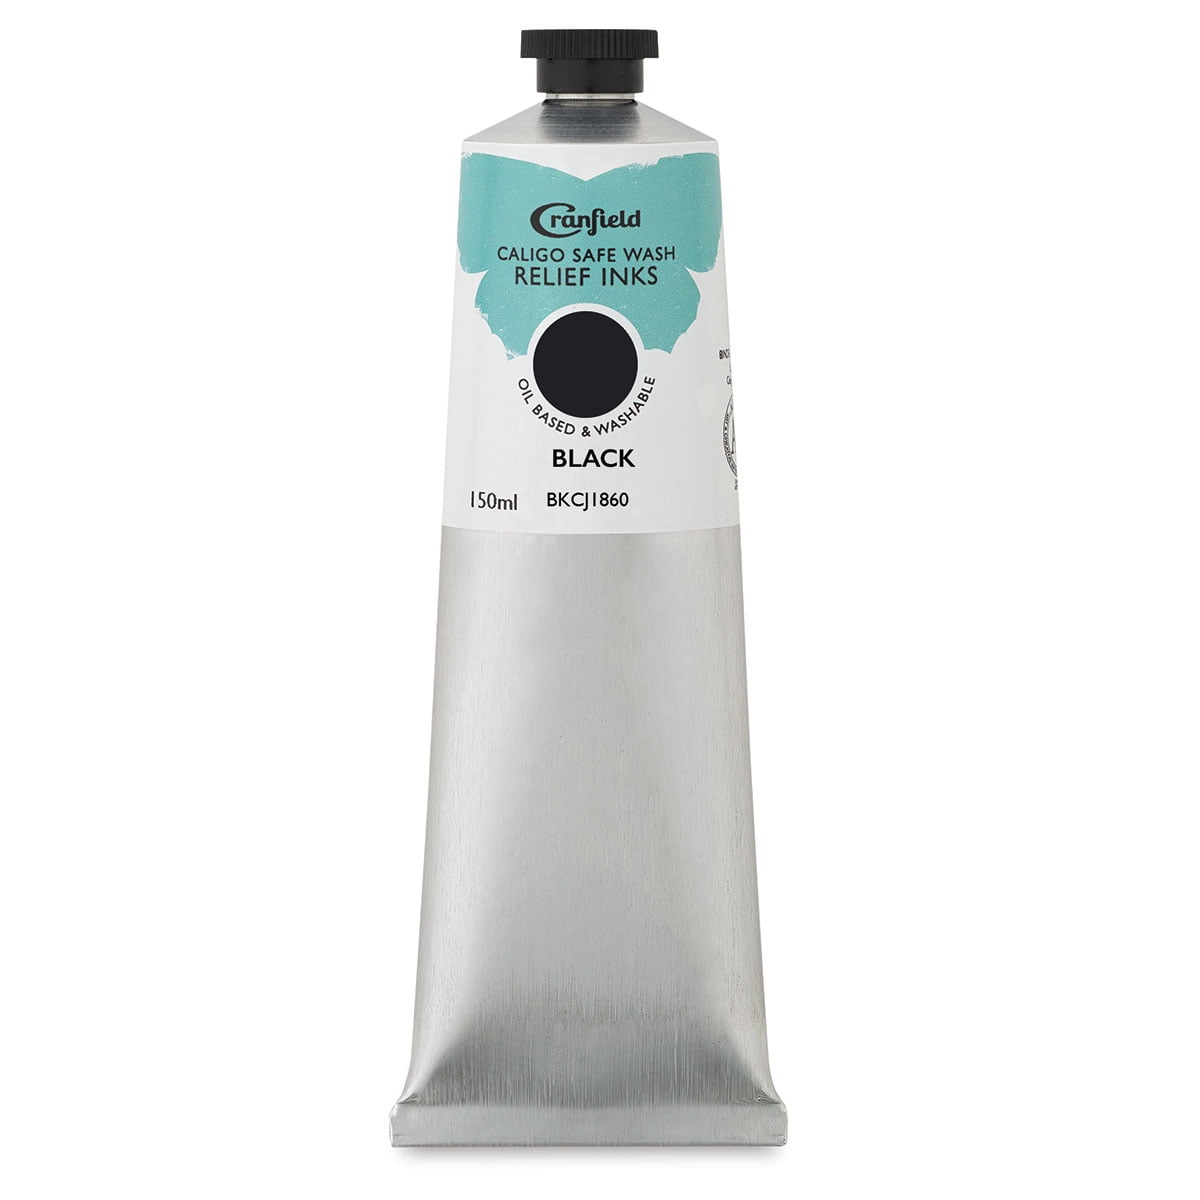 Caligo Safe Wash Relief Ink - Black, 150 ml - Walmart.com - Walmart.com